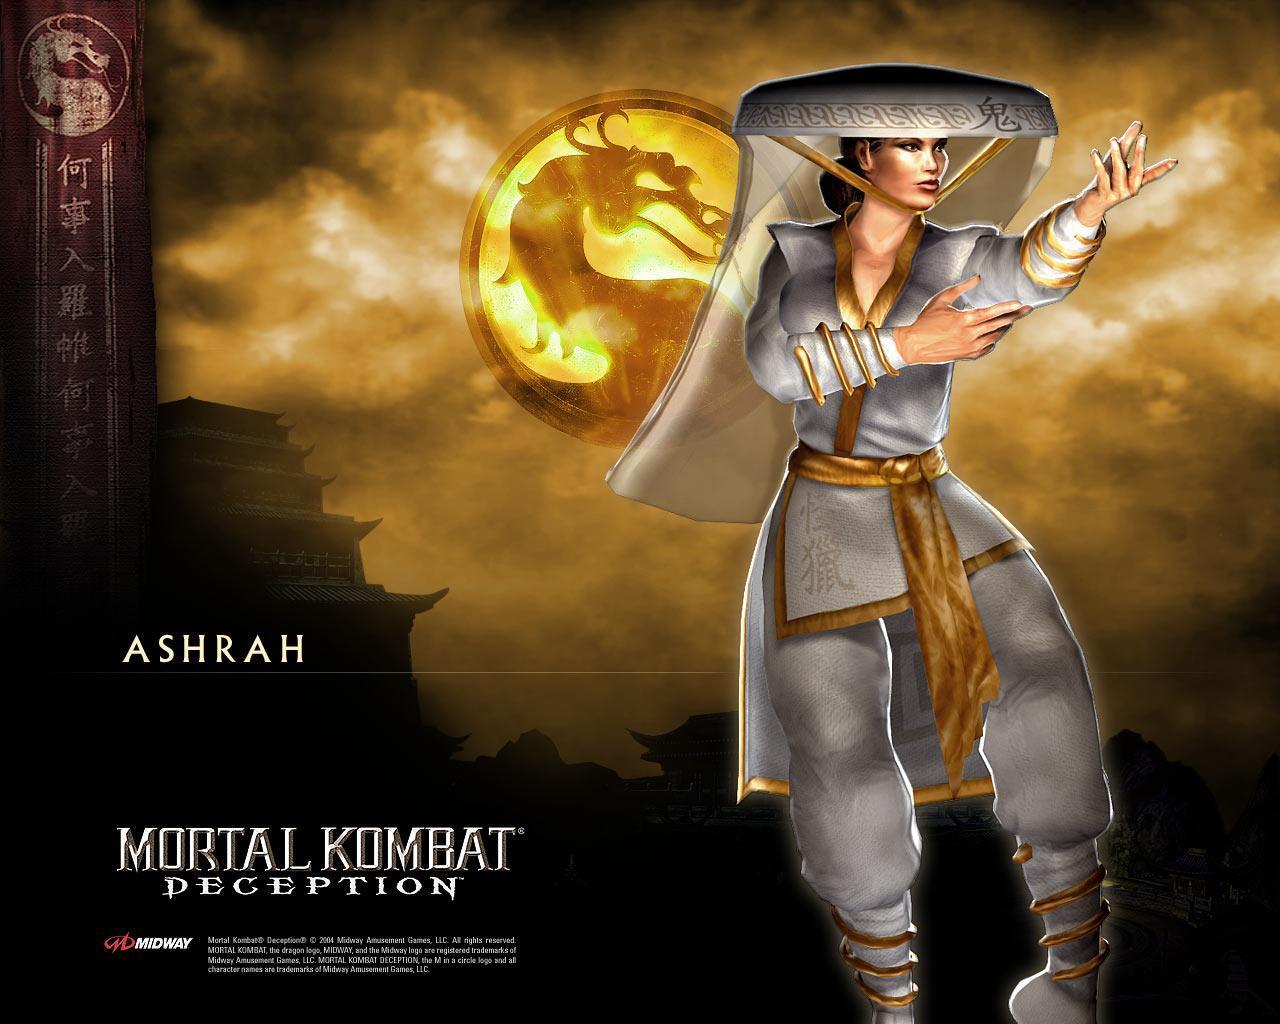 Mortal Kombat Image Mk Wallpaper Photos